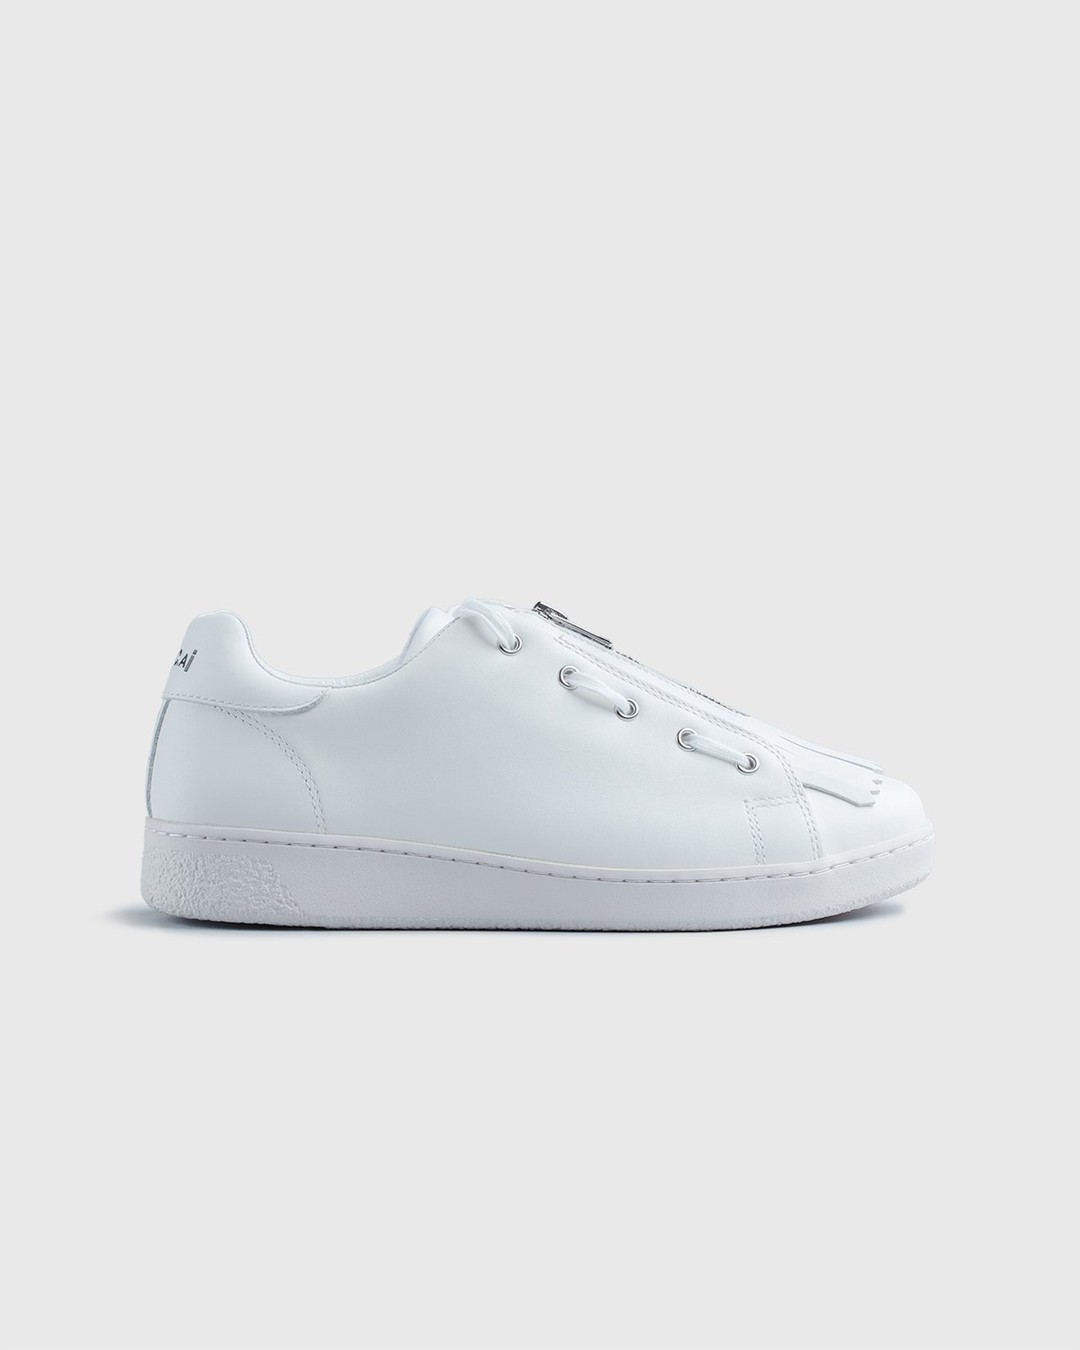 A.P.C. x Sacai – Minimal Sneaker White - Sneakers - White - Image 1